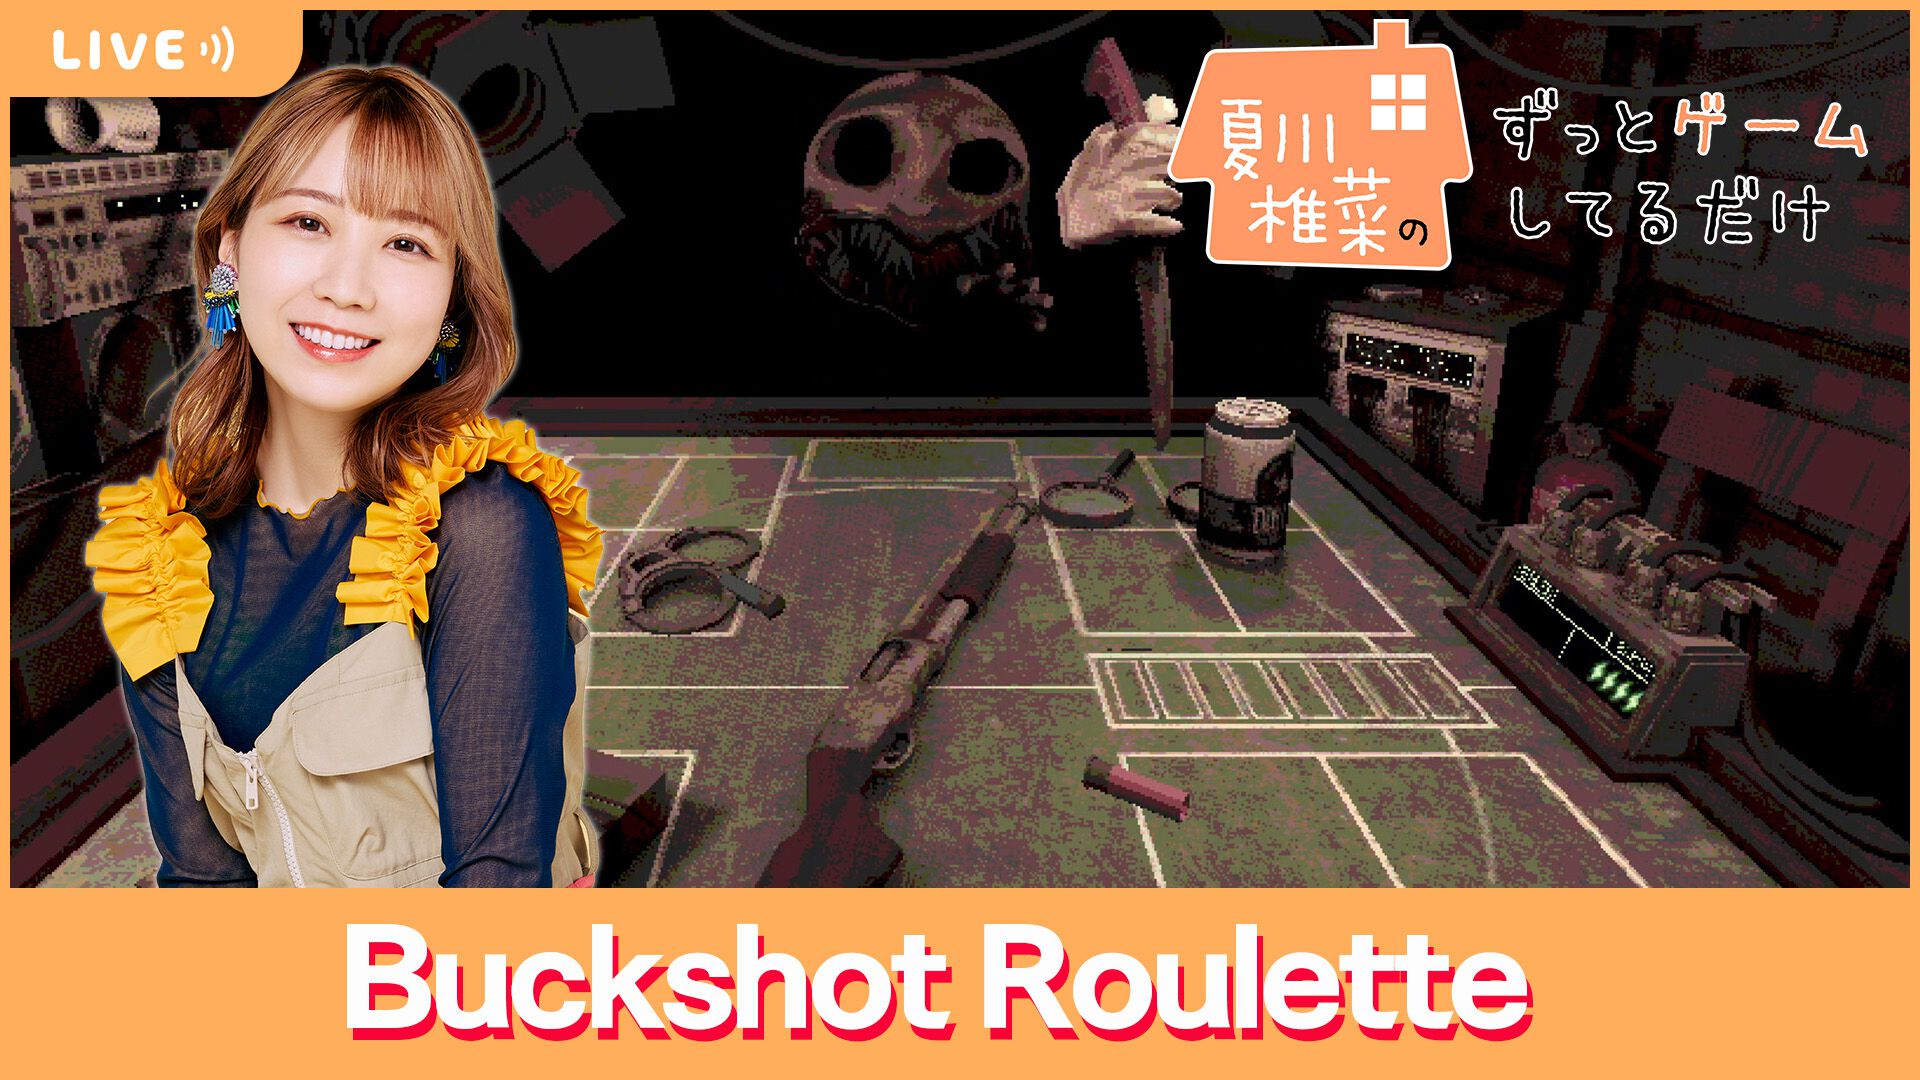 【5/3配信】声優・夏川椎菜が命懸けのギャンブルに挑戦!?  『Buckshot Roulette』をプレイ【#夏川ずっとゲ】